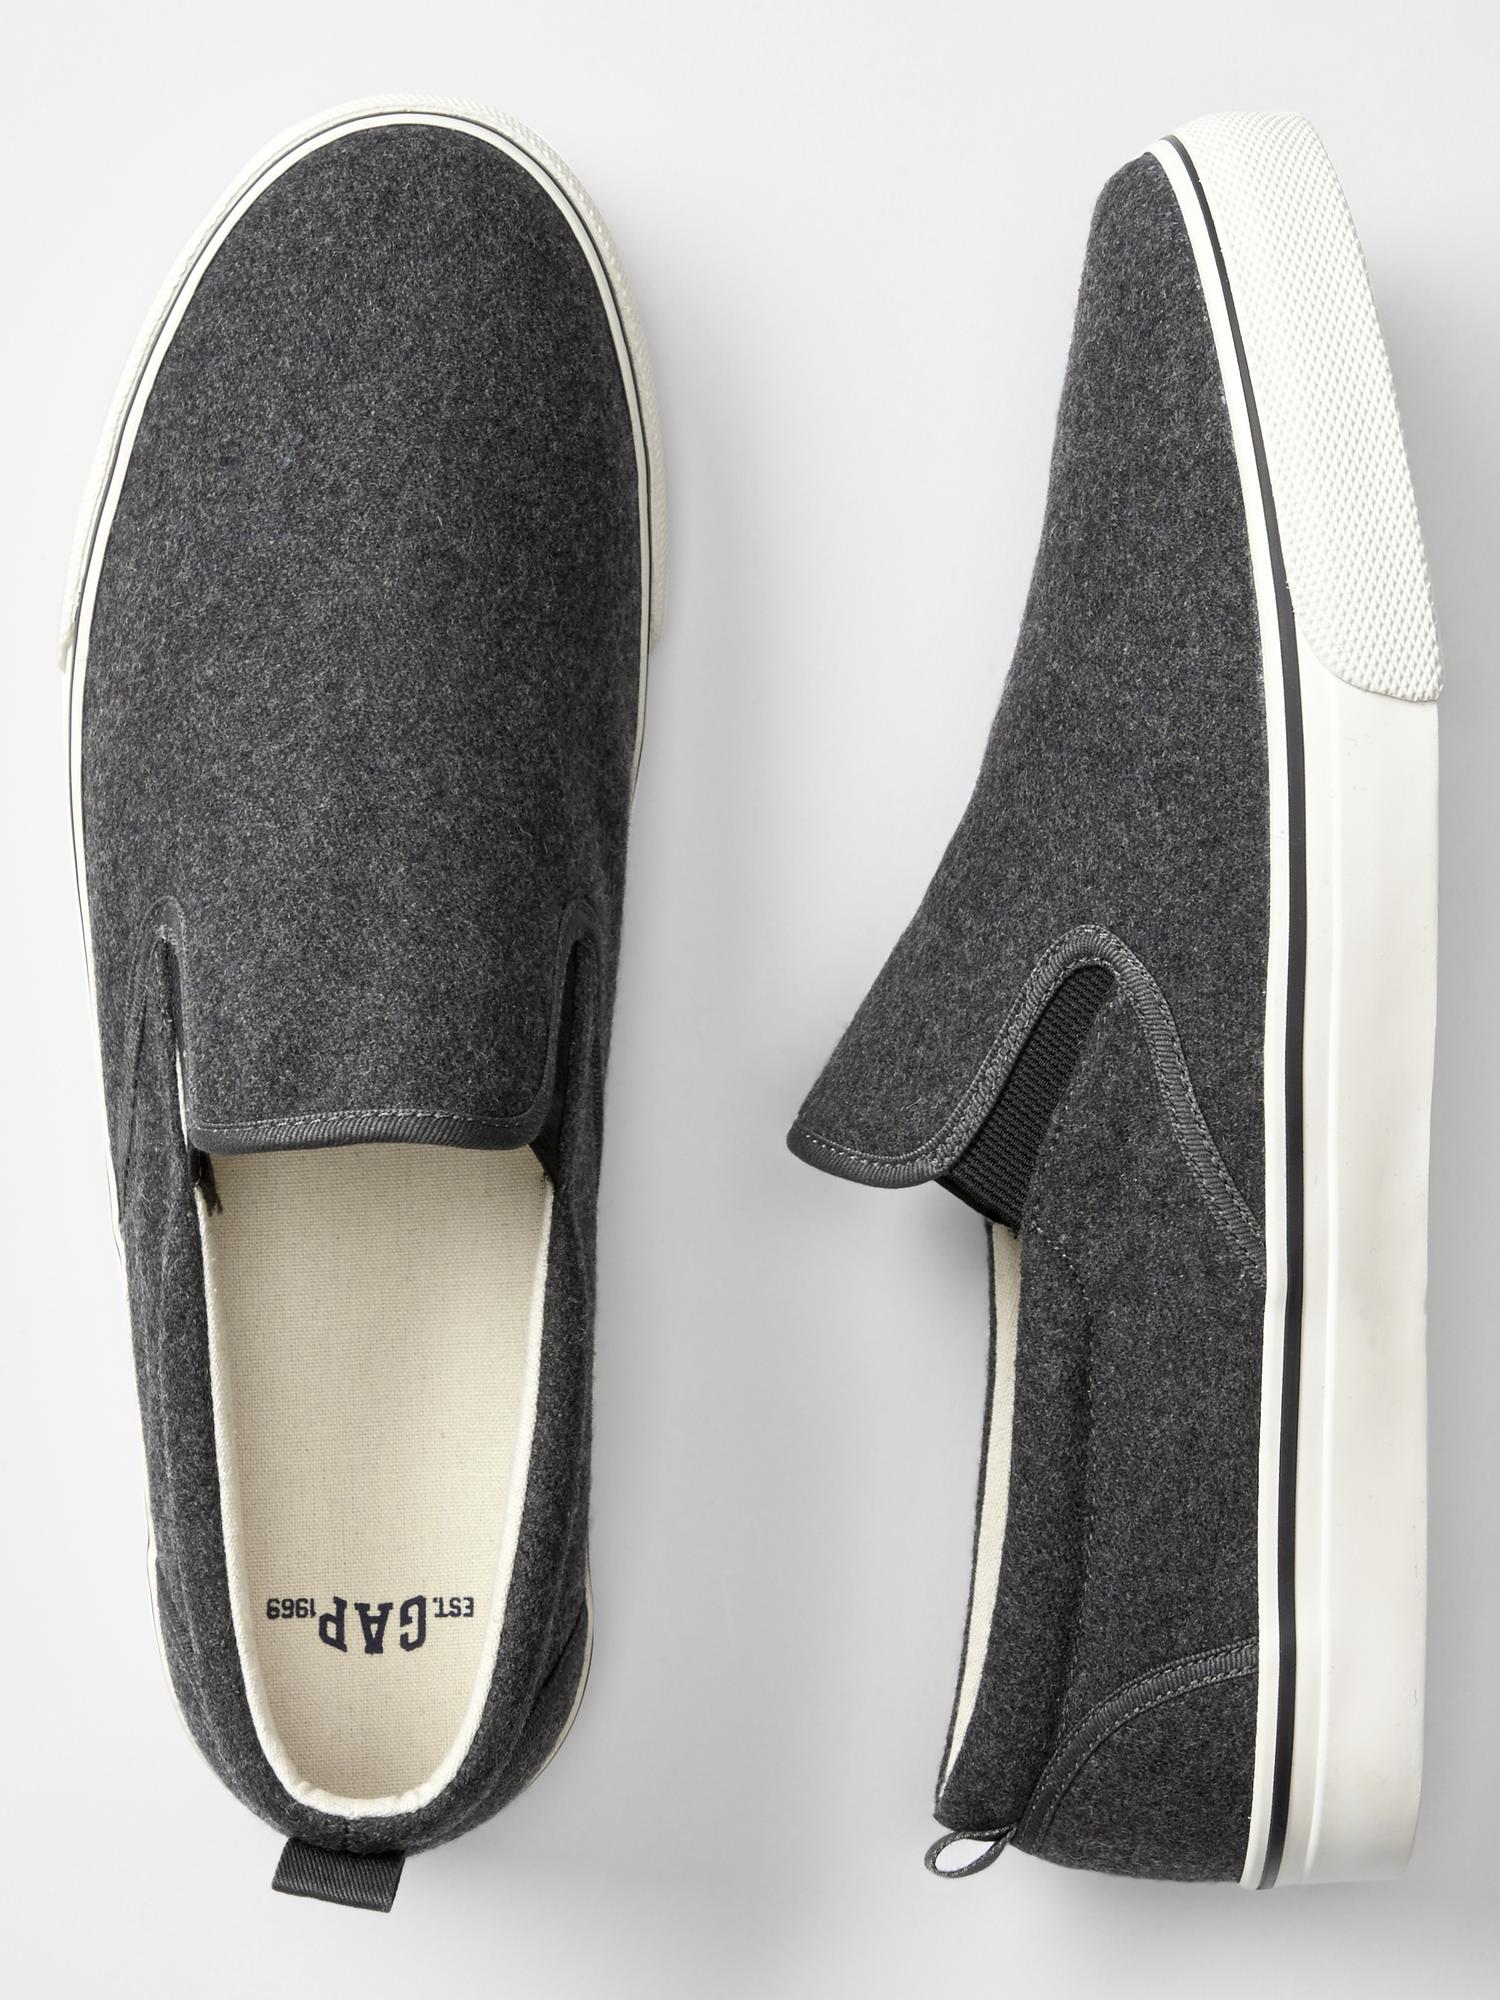 Wool slip-on sneakers | Gap